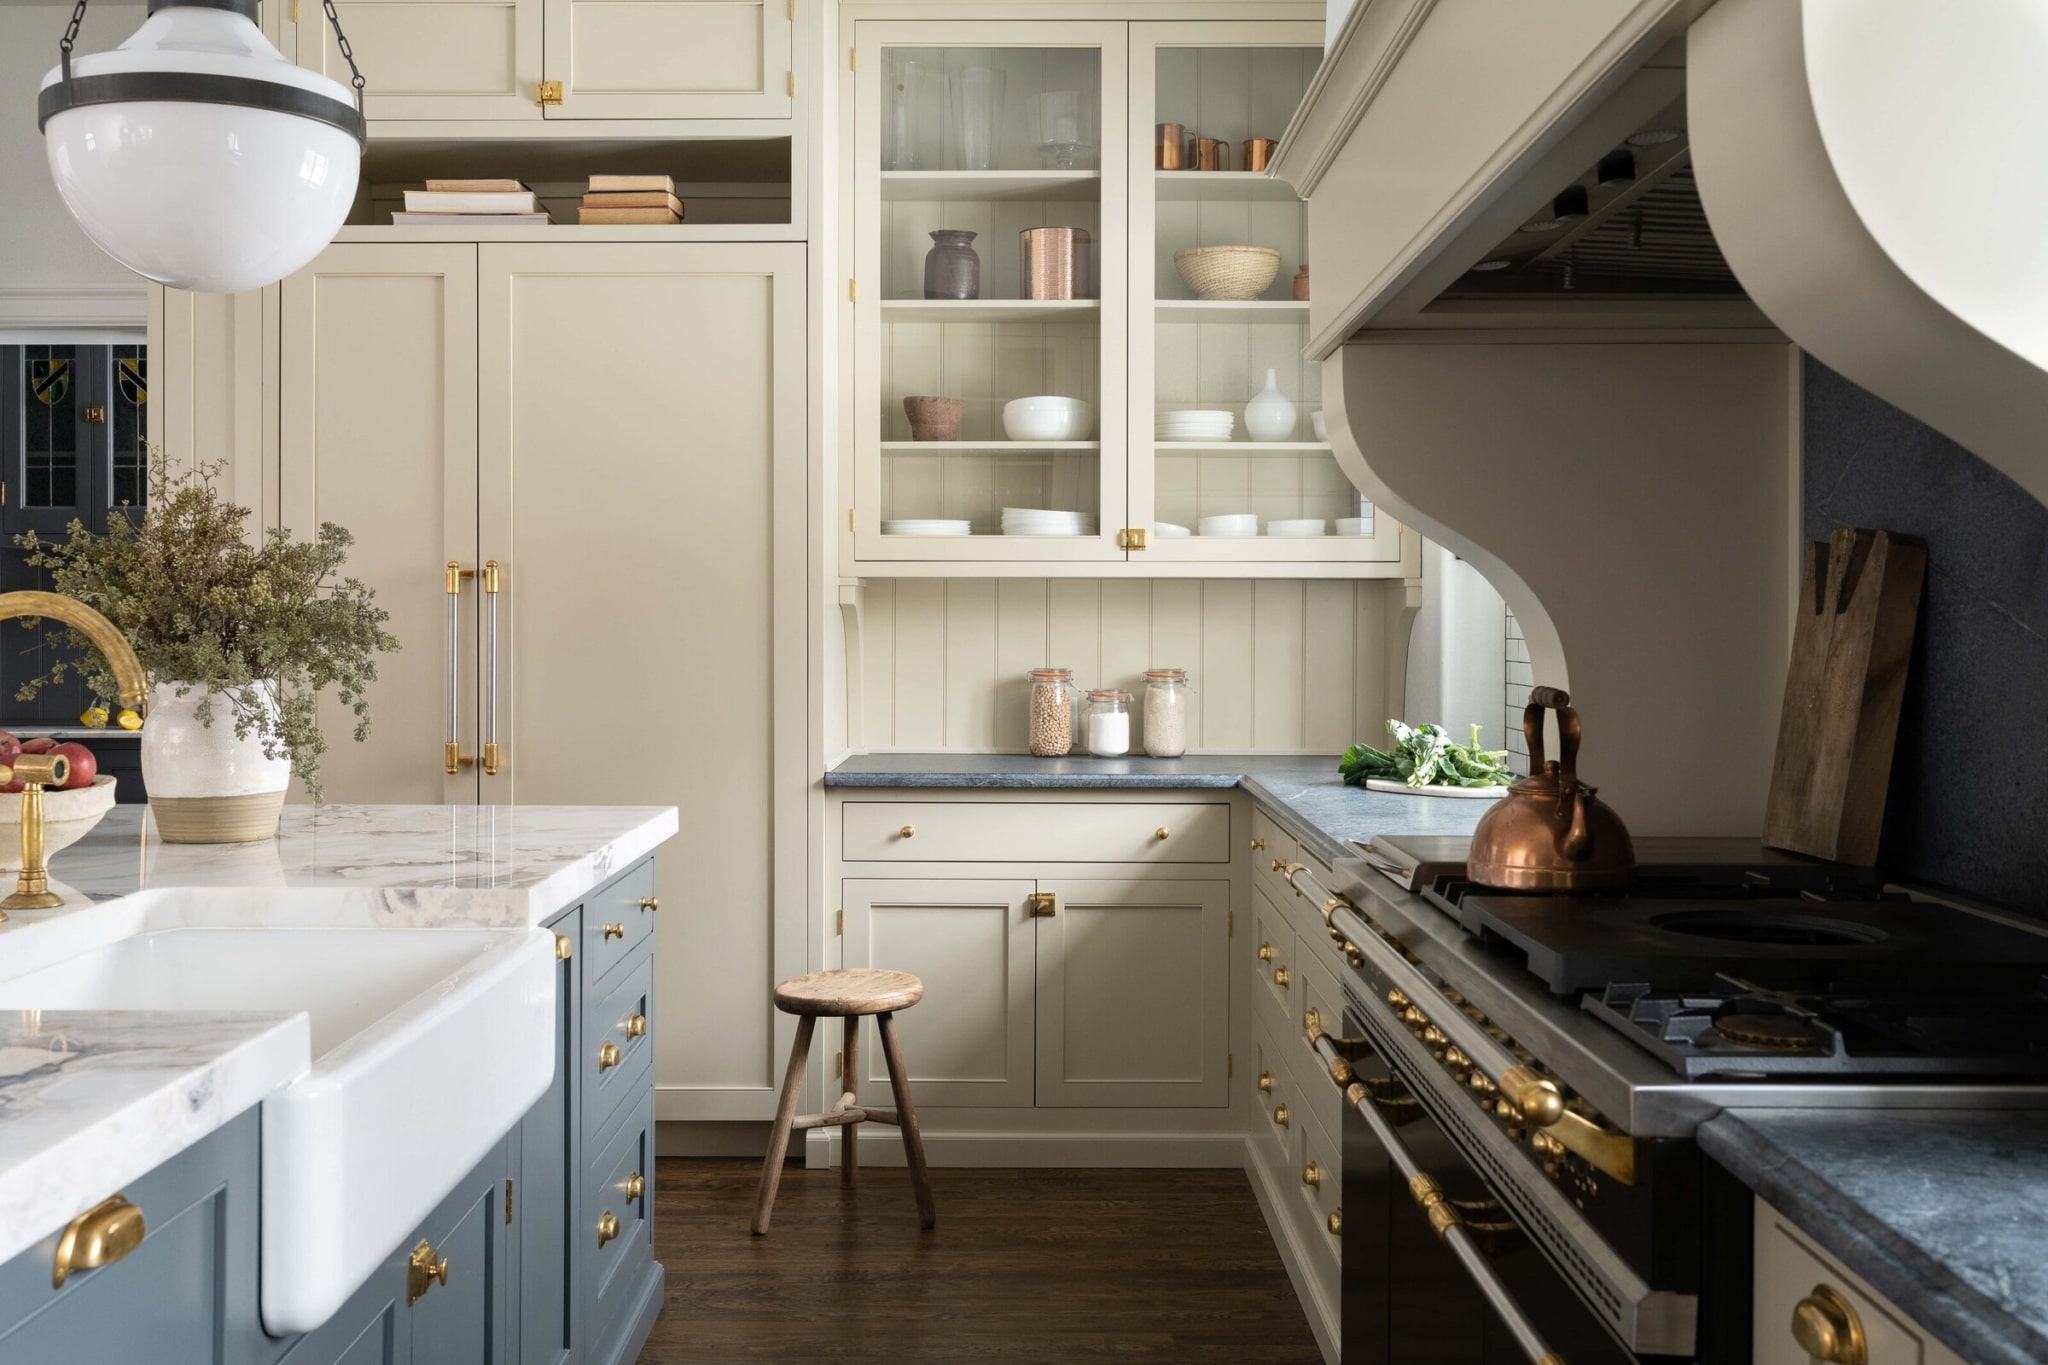 Whittney Parkinson Design - kitchen design - kitchens - kitchen decor